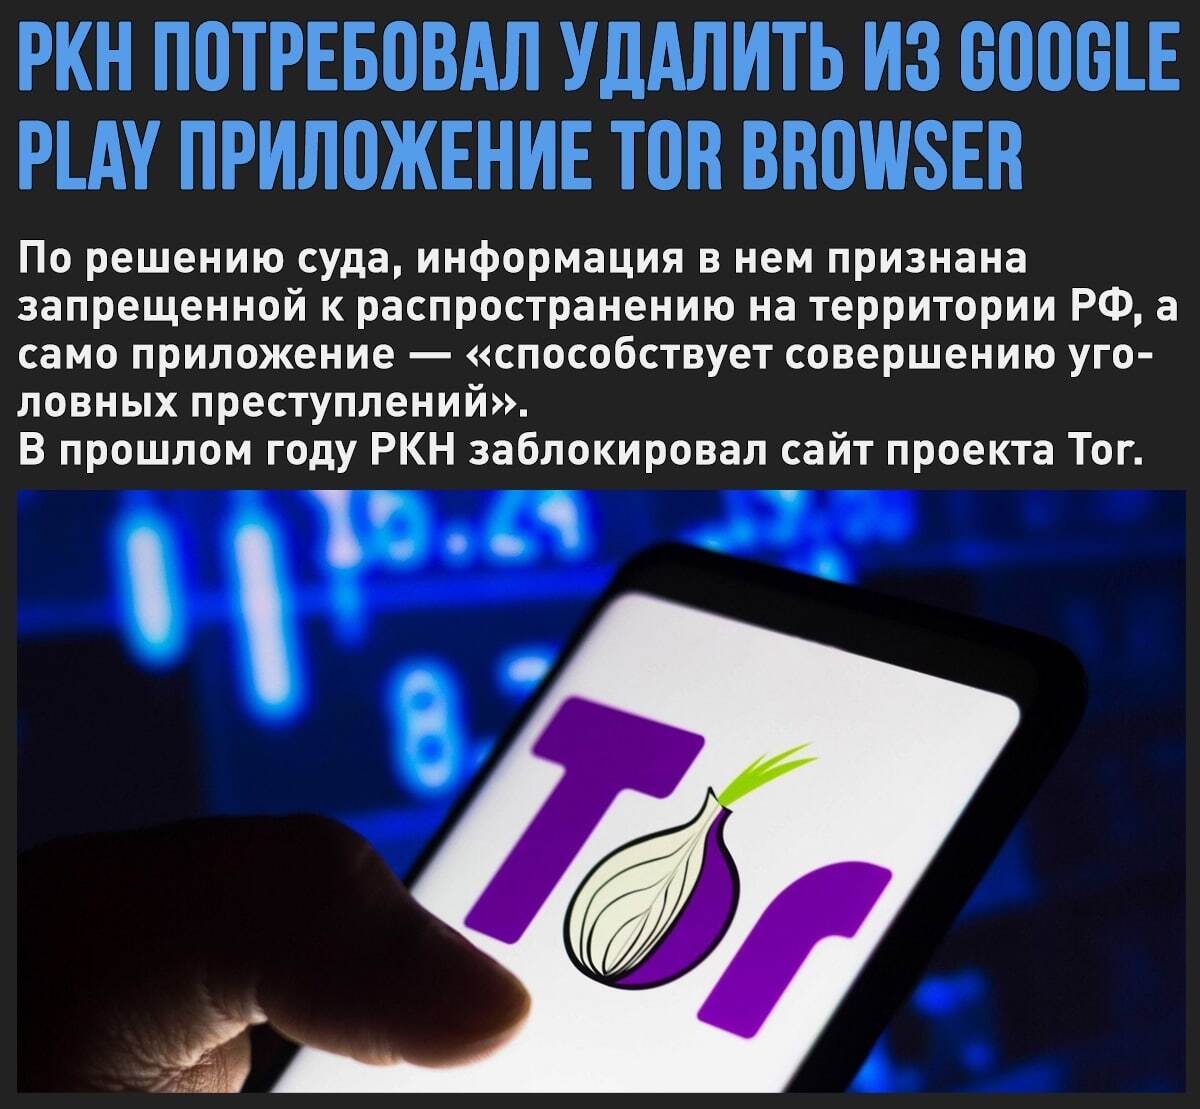 Tor browser детское порно megaruzxpnew4af hack tor browser mega